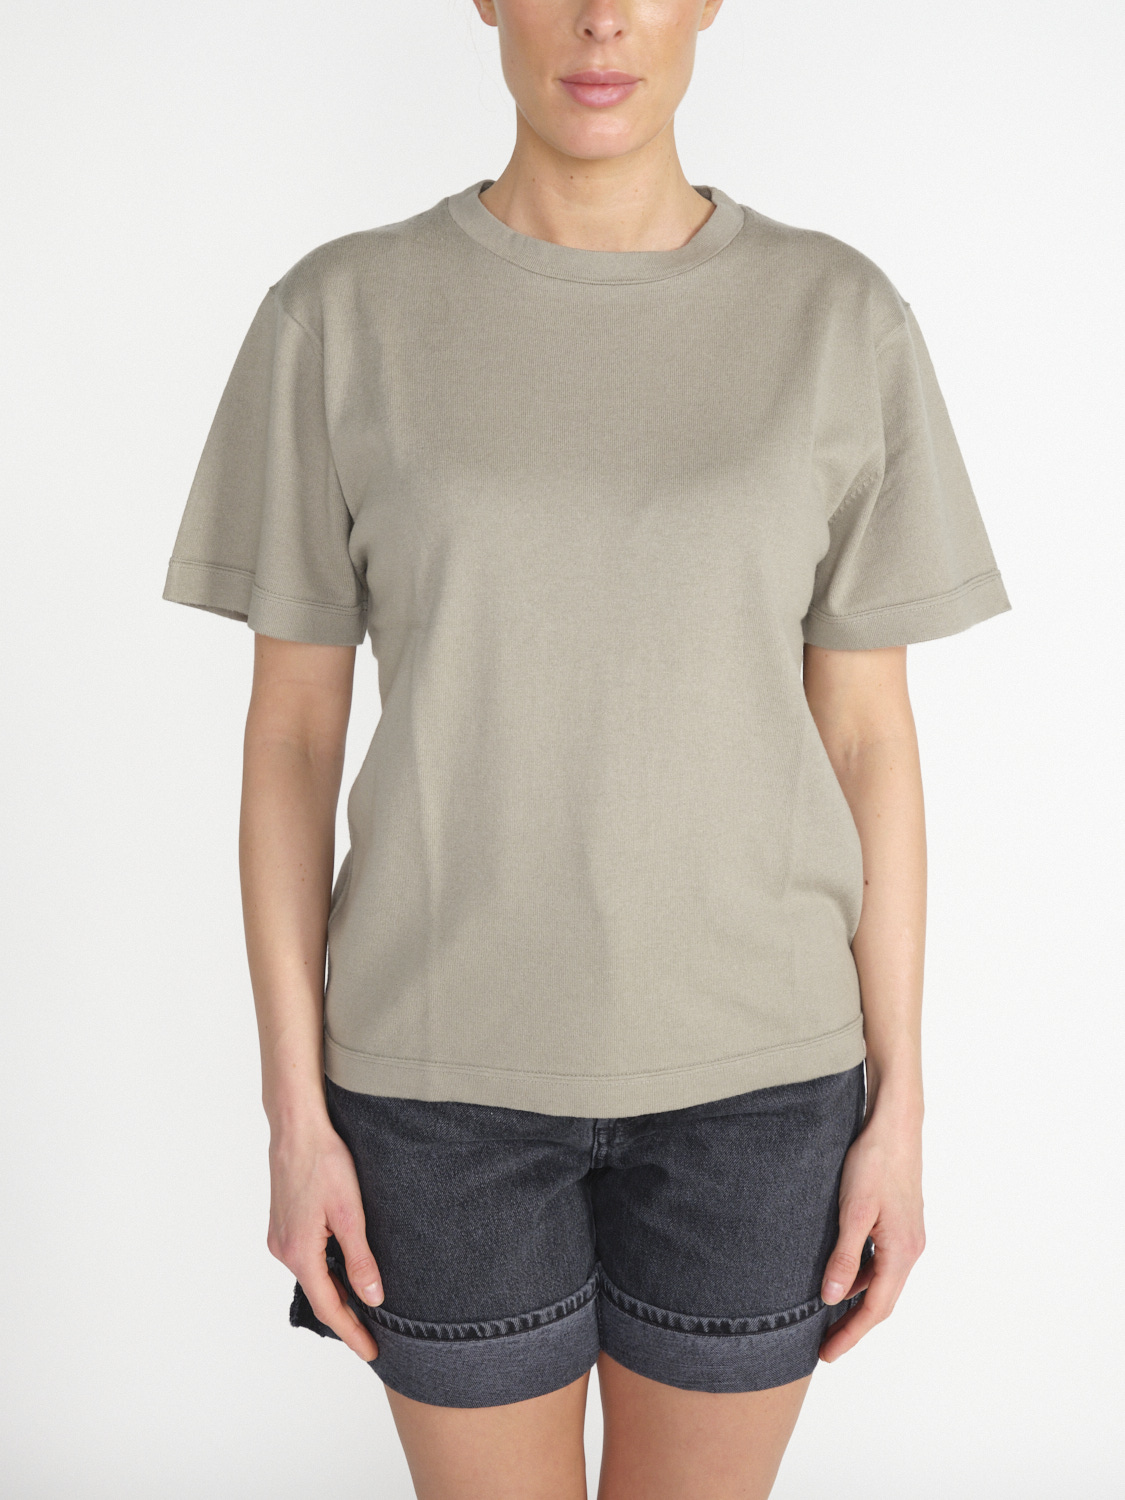 Extreme Cashmere n° 268 Cuba - T-shirt ampia in misto cashmere e cotone hellgrün Taglia unica